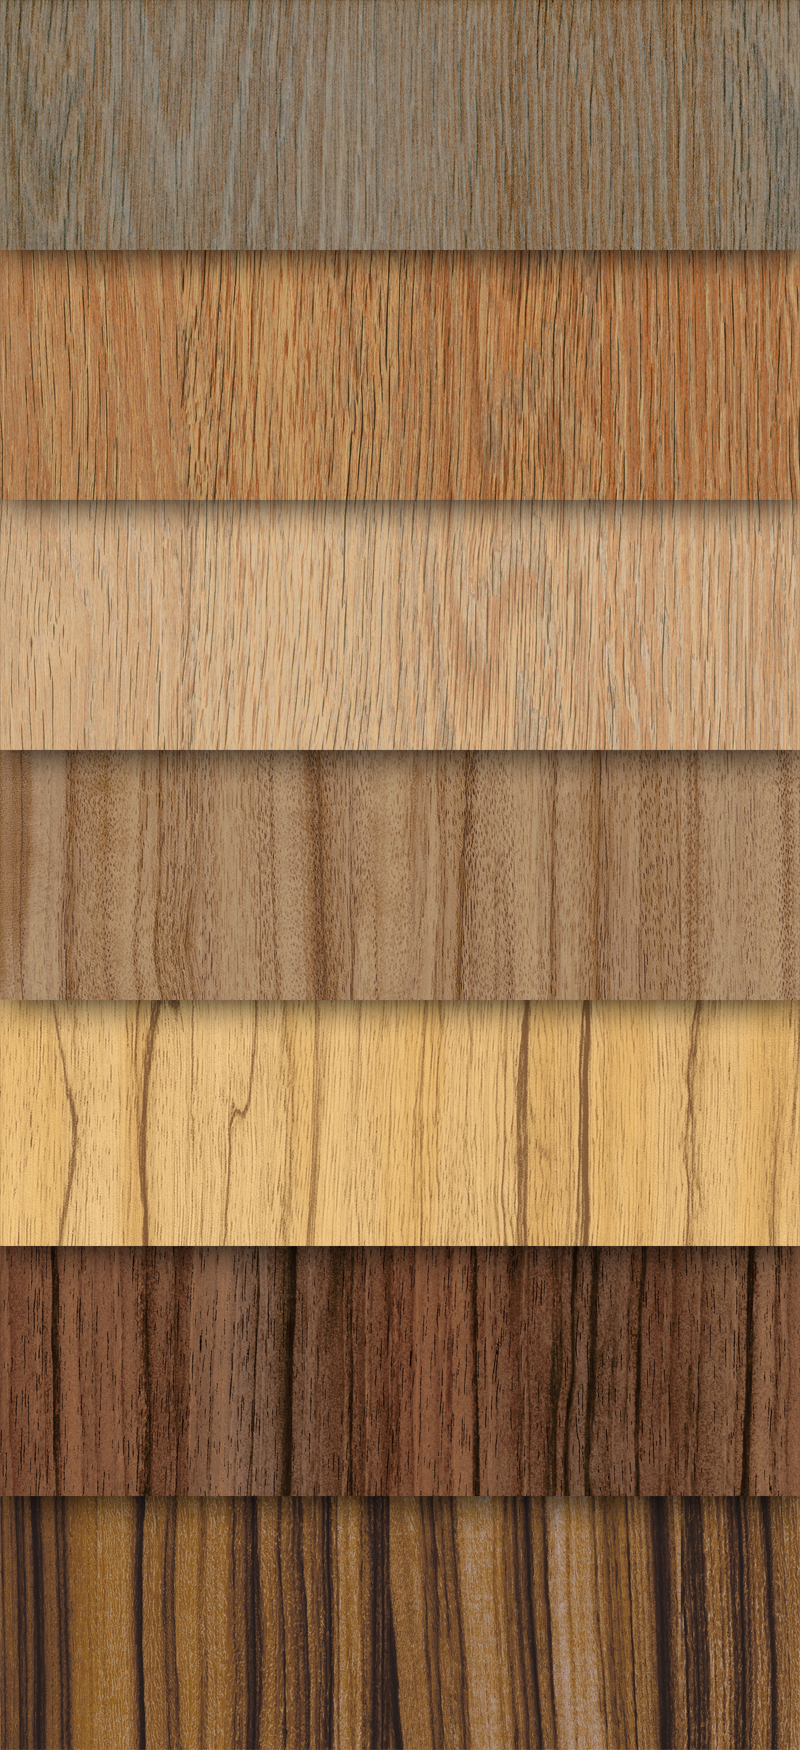 maderas de diferentes tipos